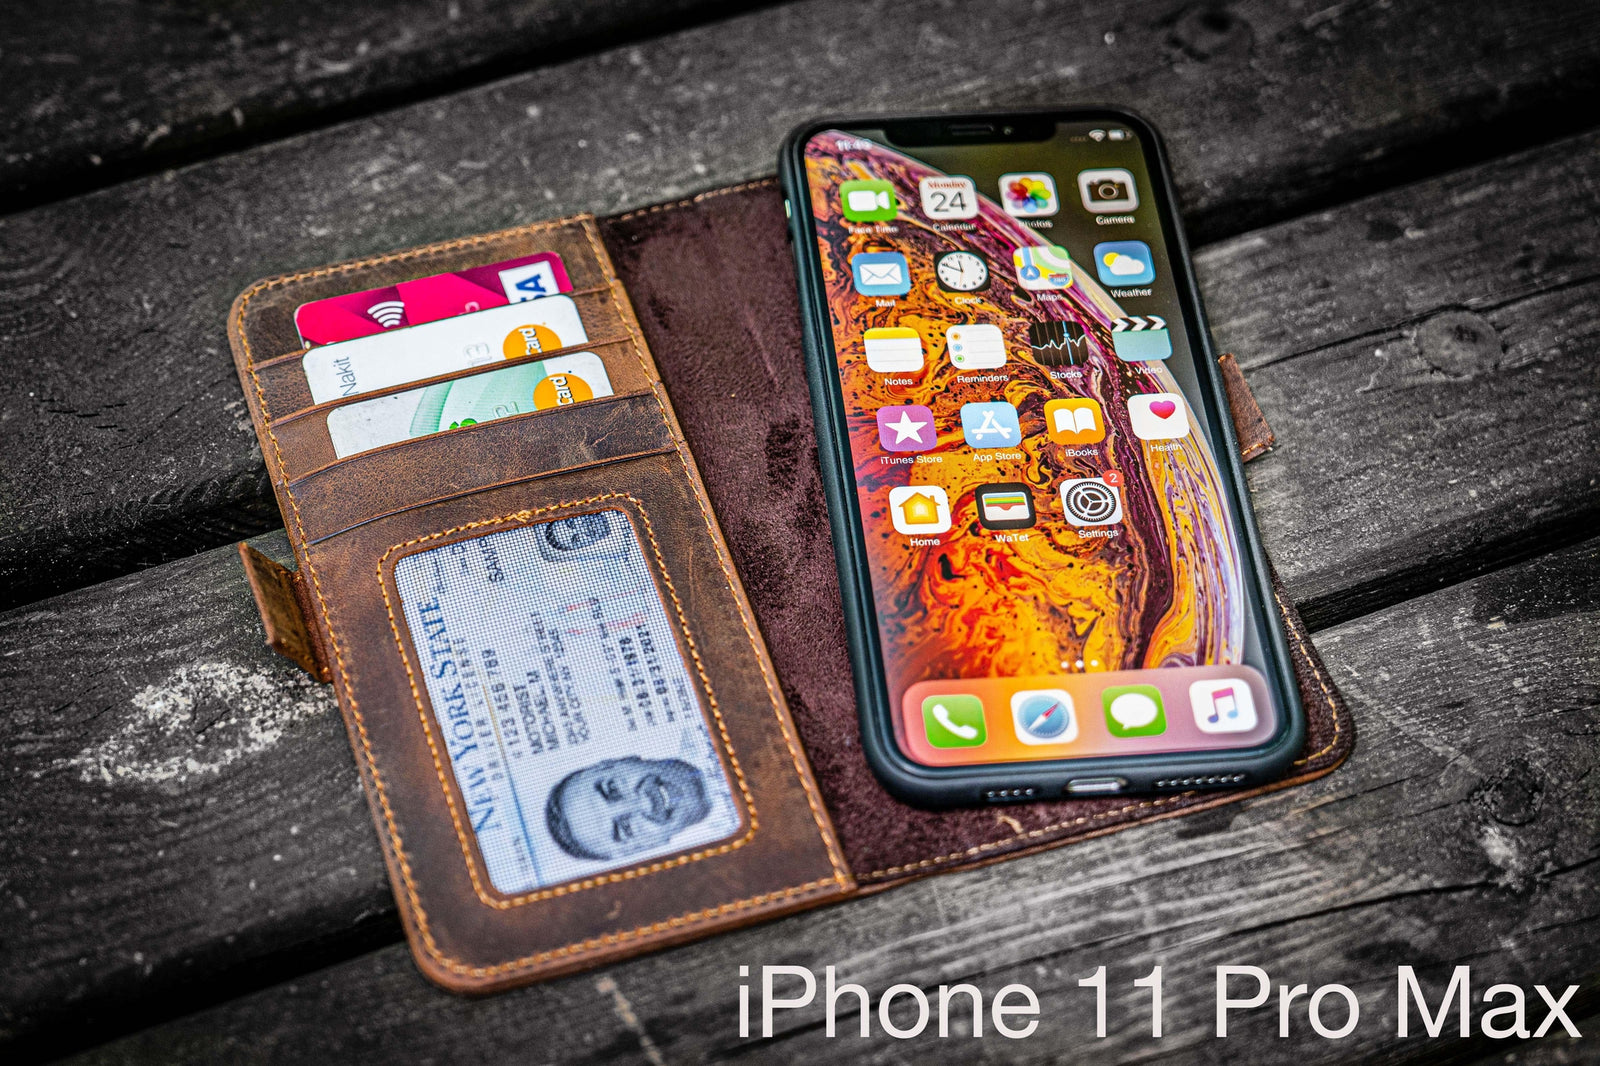 Detachable iPhone 13 Leather Wallet Case